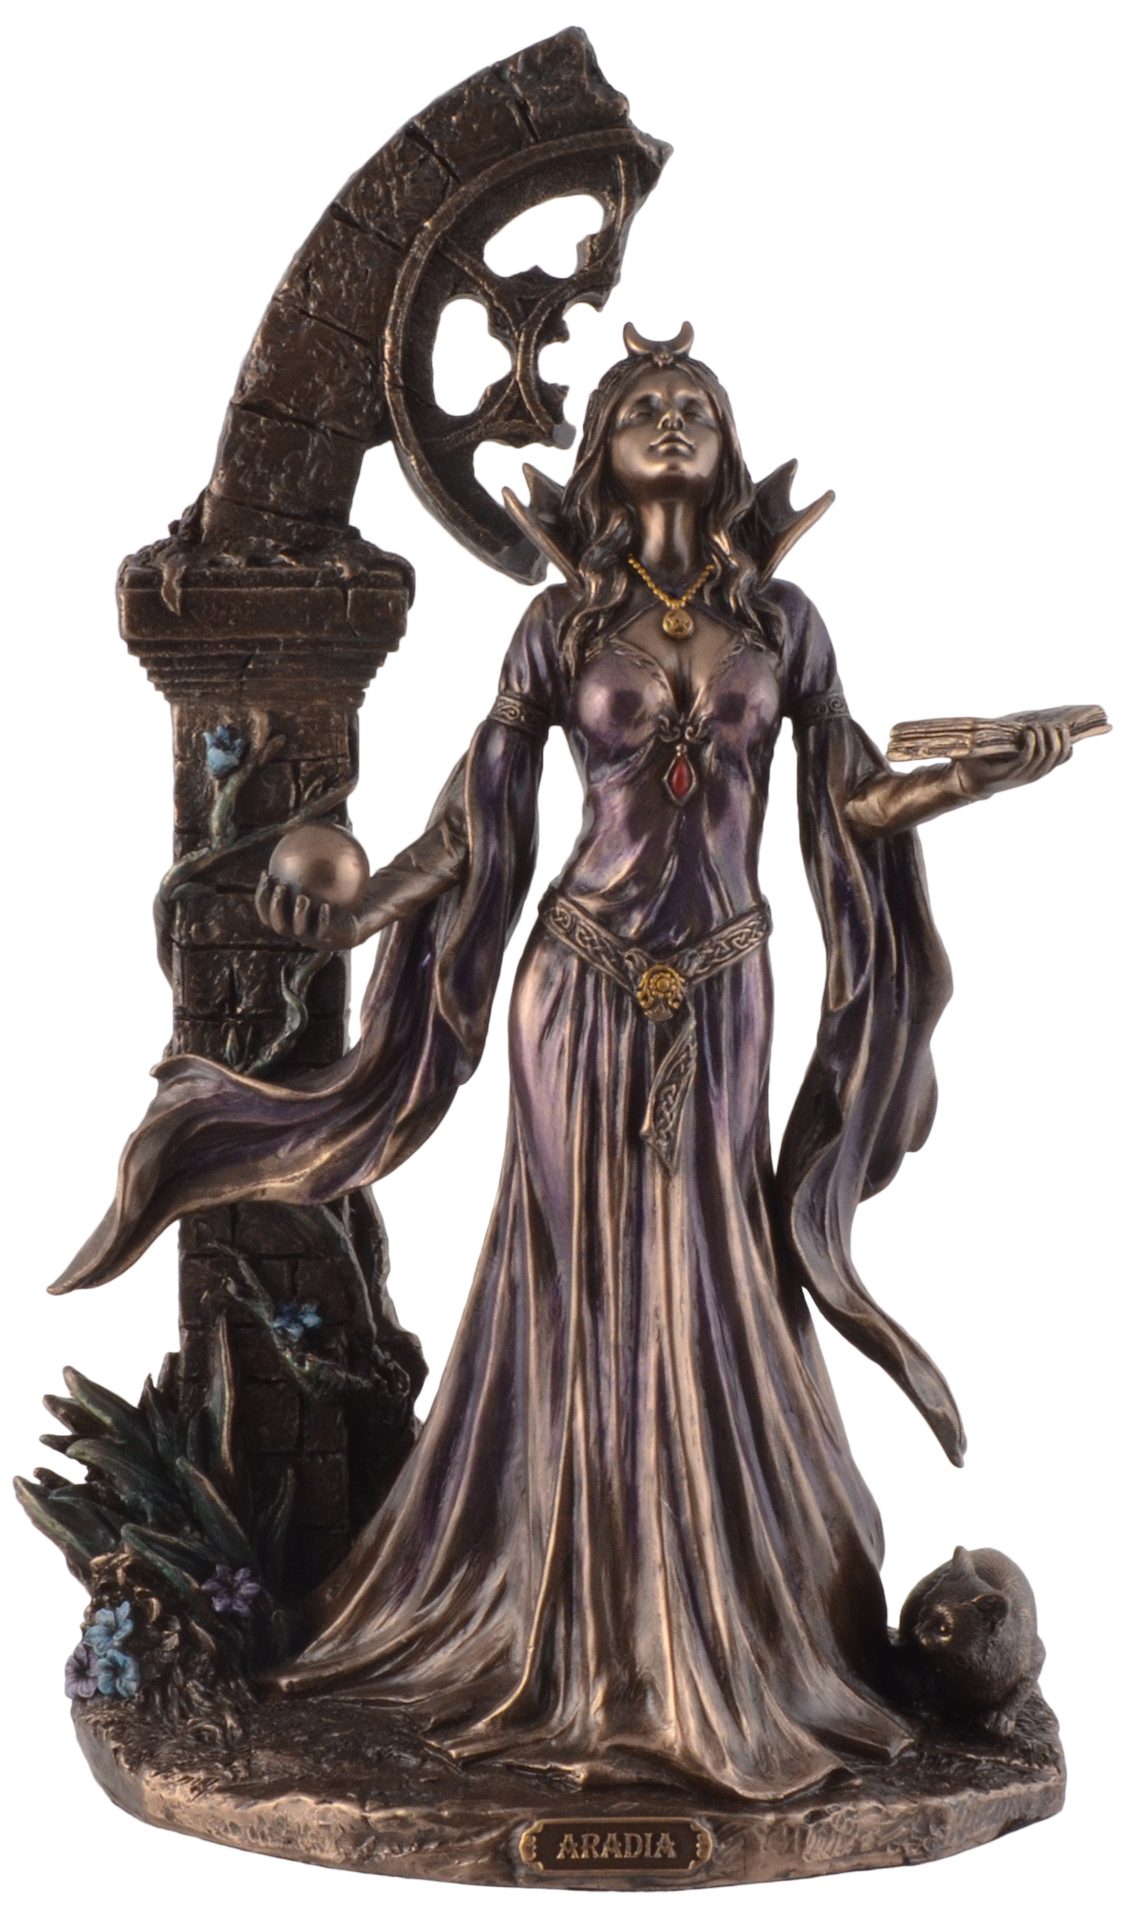 Vogler direct Gmbh Dekofigur Aradia, Wiccakönigin der Hexen - by Veronese, Details wurden von Hand bronziert, LxBxH ca. 16x12x25cm